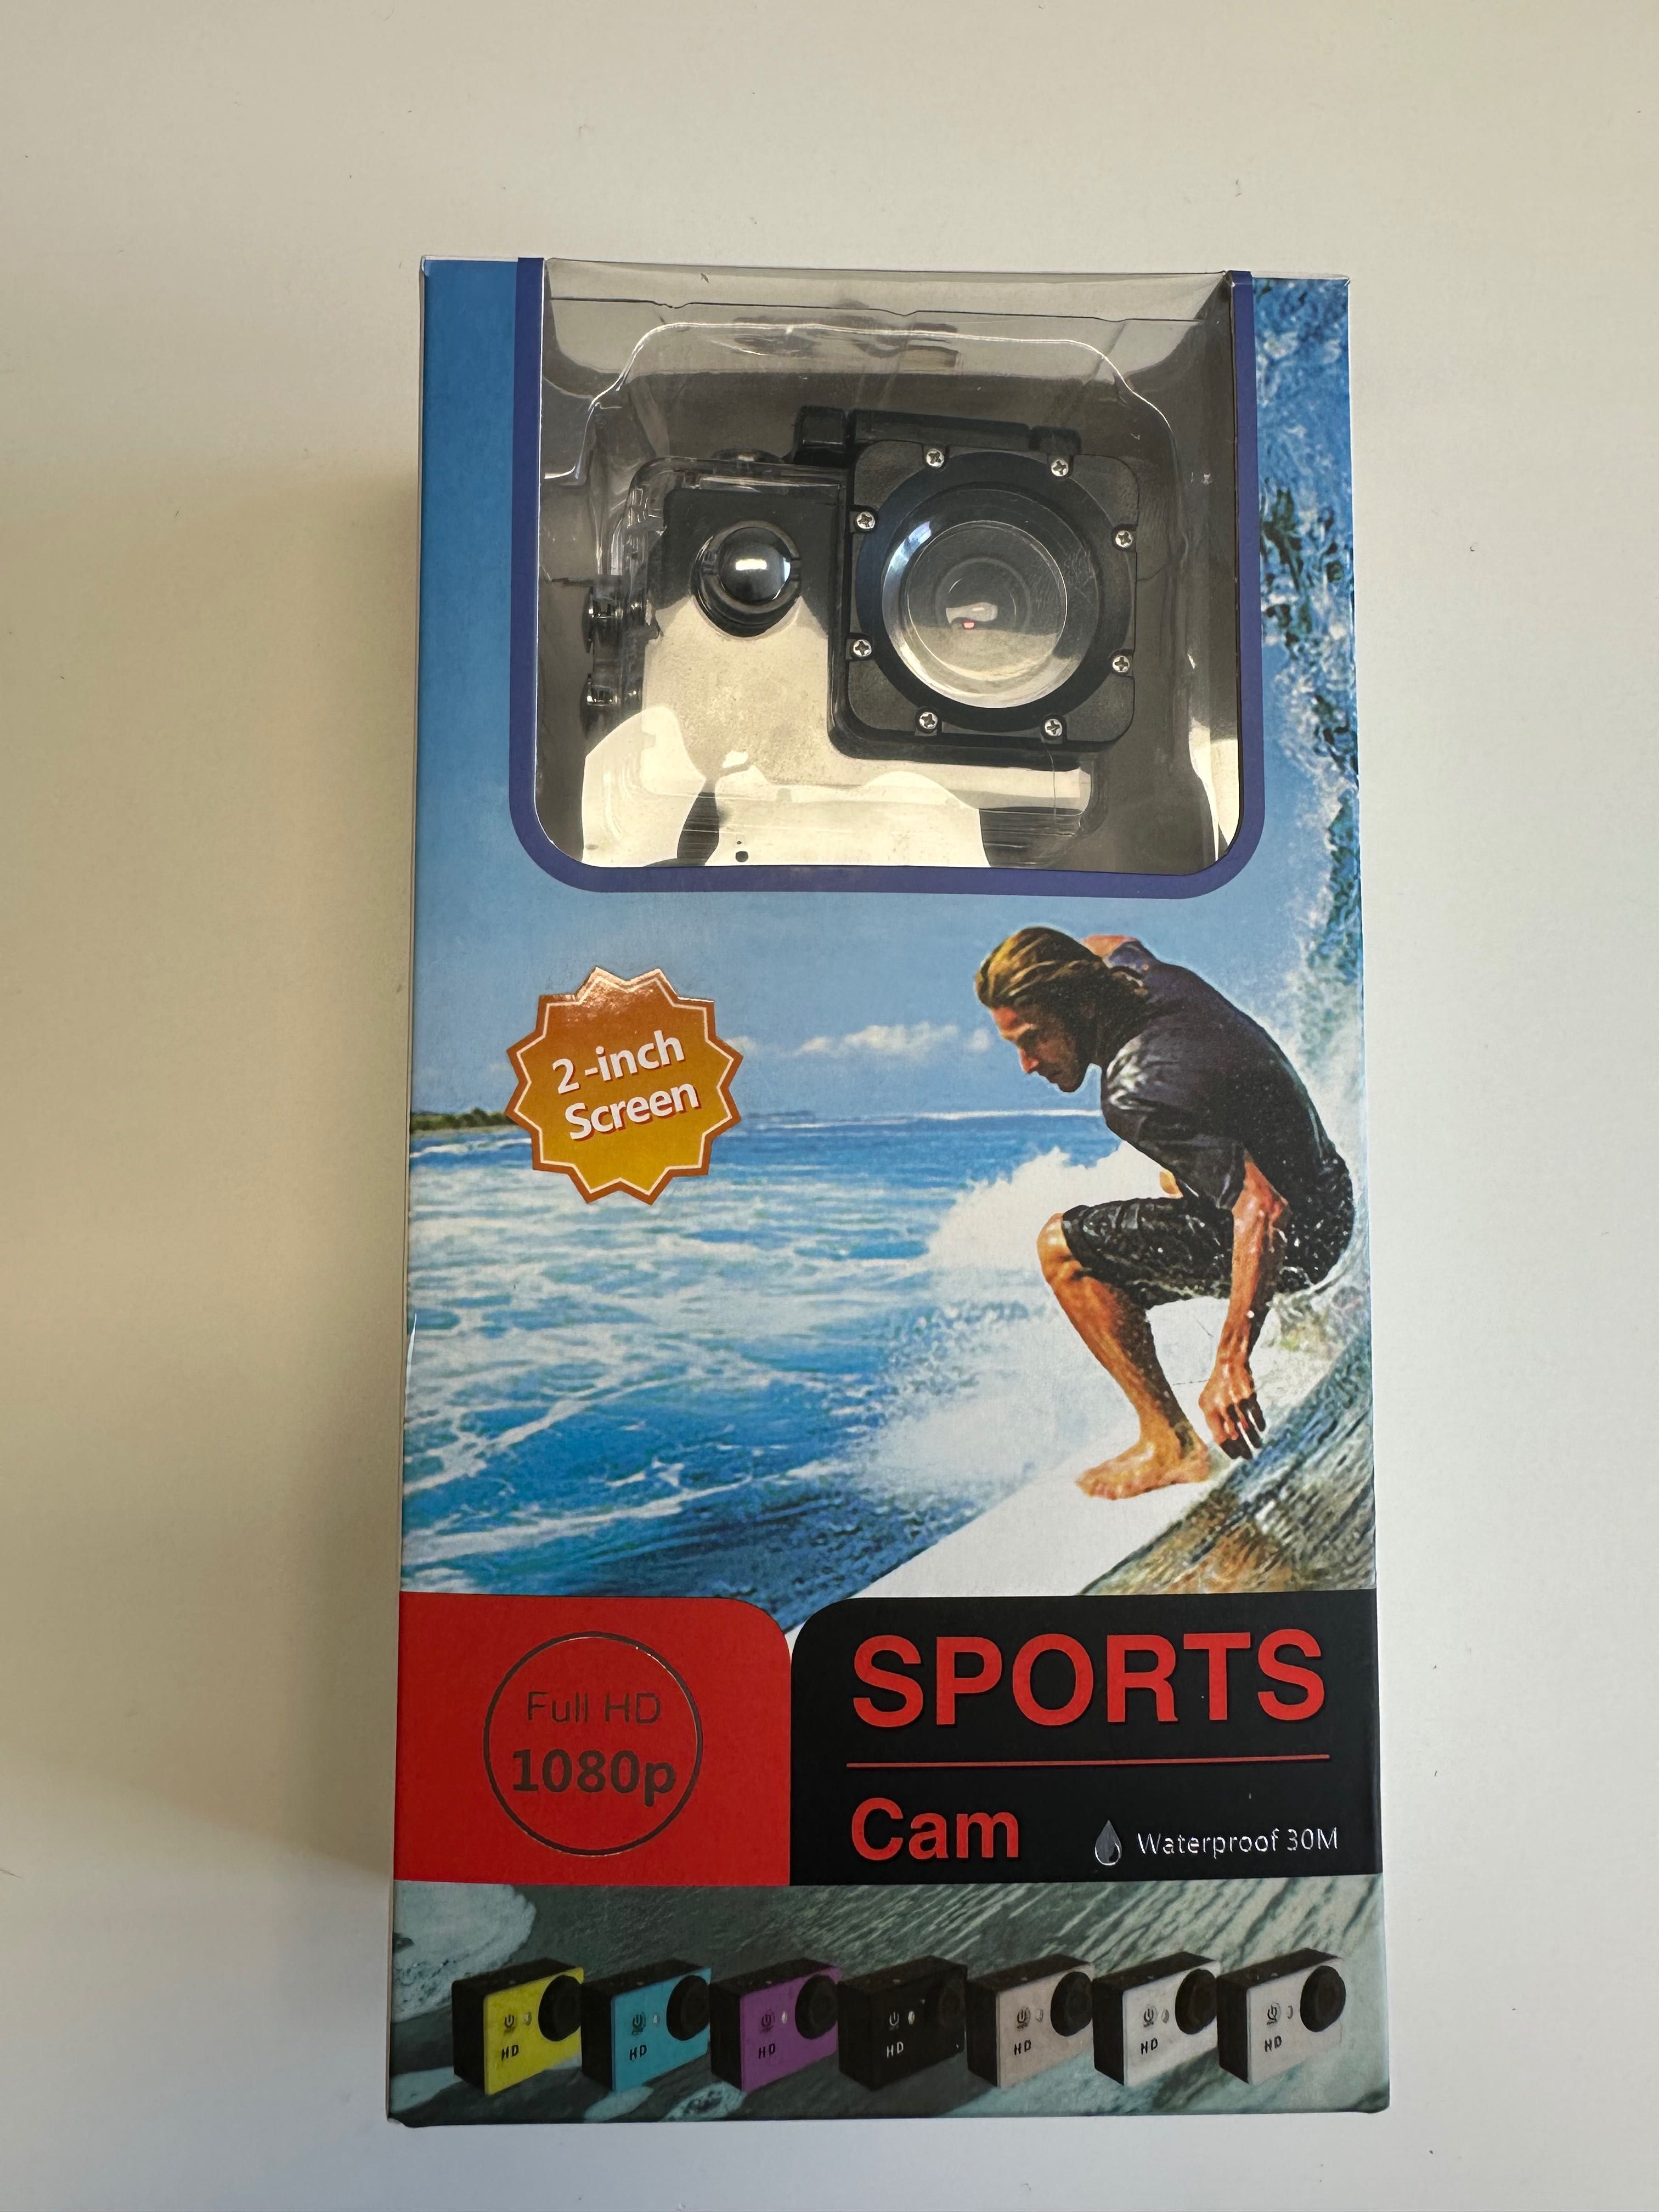 Sports Cam Full HD 1080p